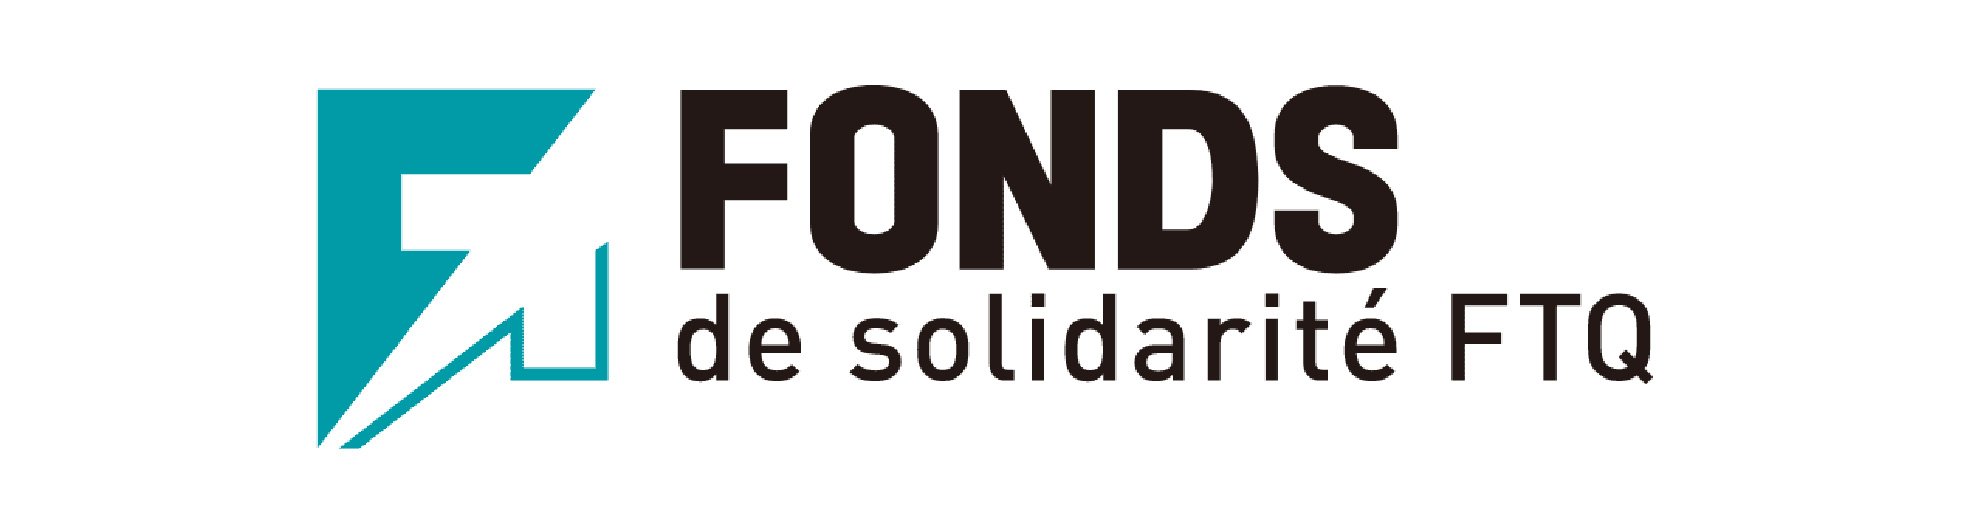 The Fonds de solidarité FTQ (Copy) (Copy)